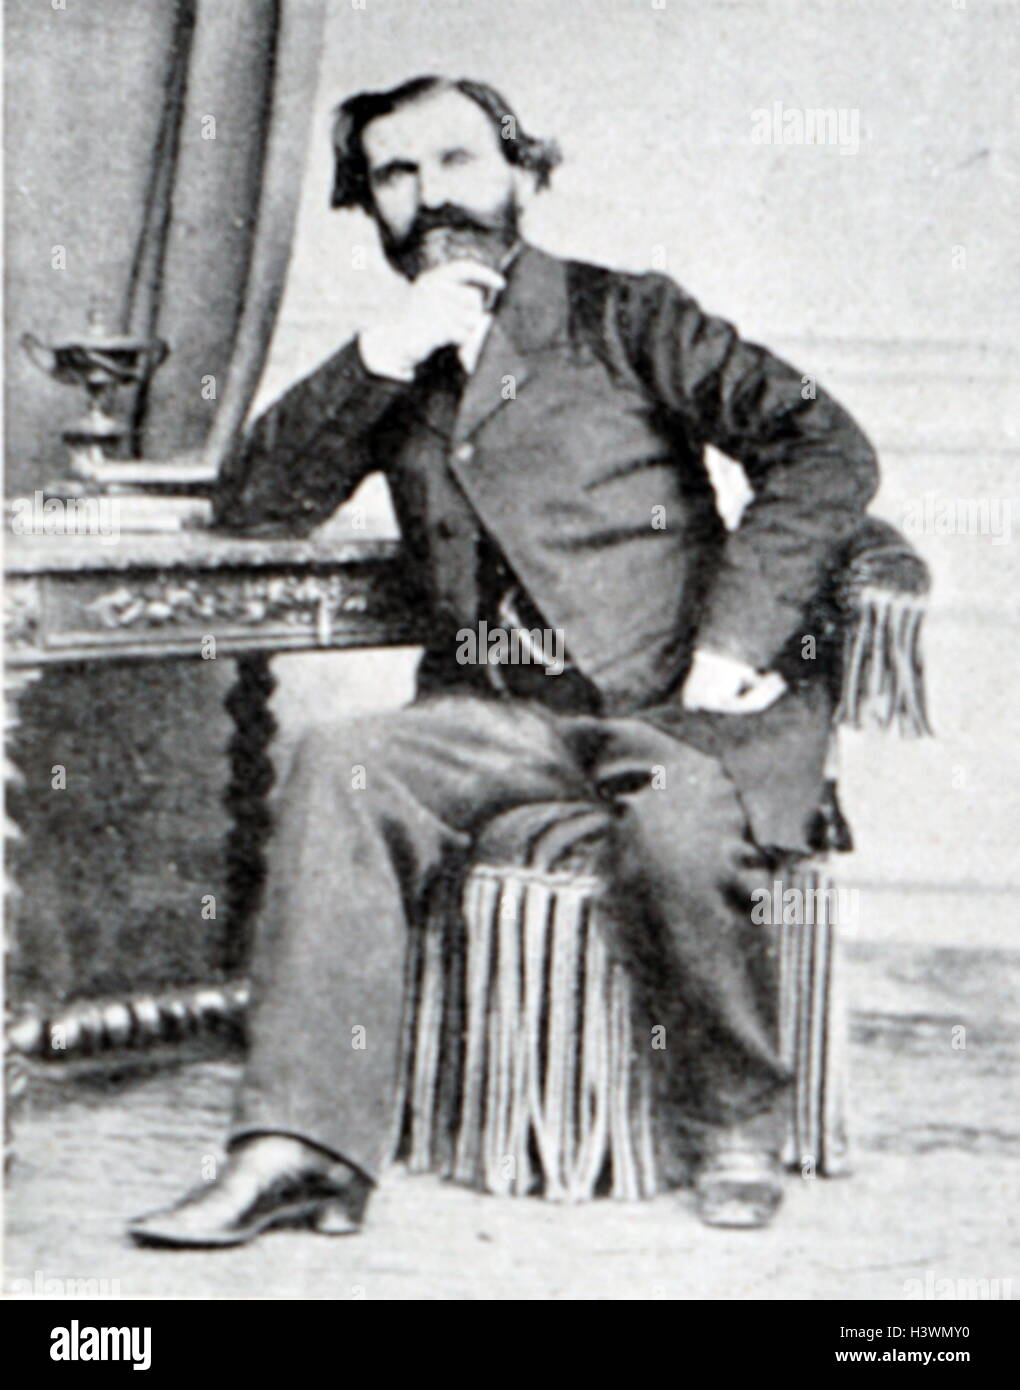 Ritratto del Ritratto di Giuseppe Verdi (1813-1901) un compositore italiano. Da Giovanni Boldini (1842-1931) un pittore italiano. Datata del XIX secolo Foto Stock